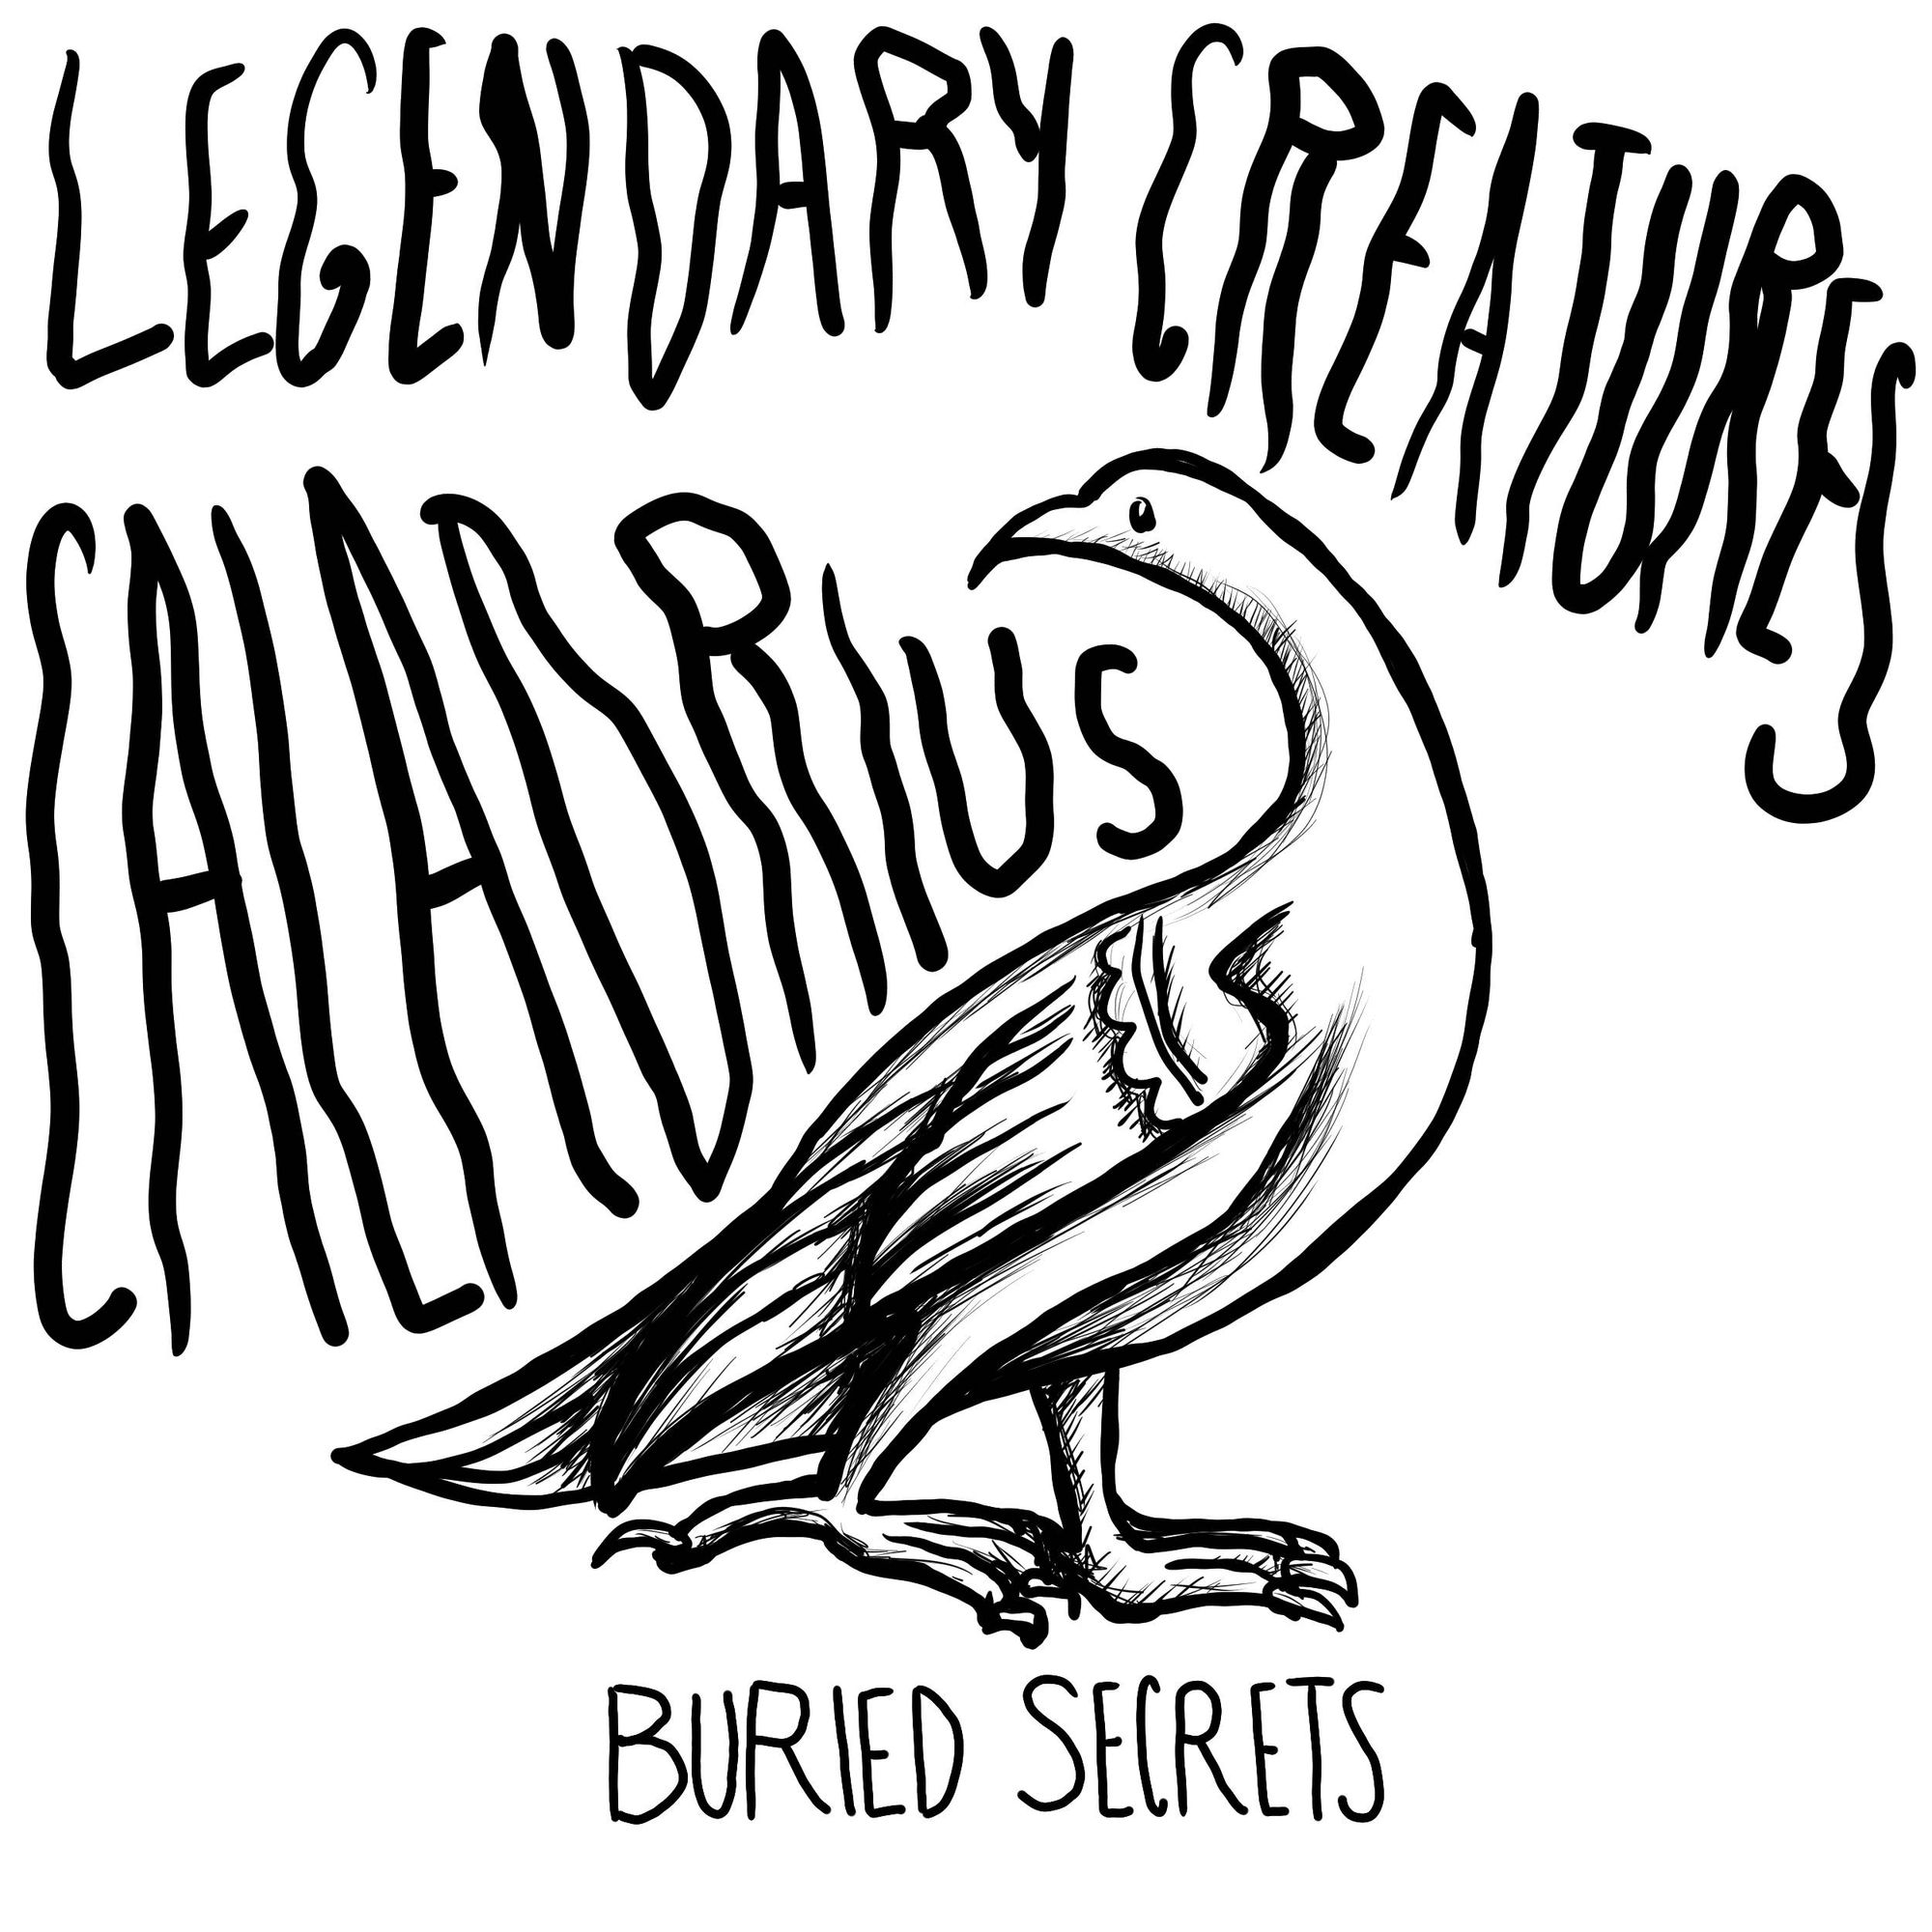 The Caladrius (Weird Medieval Creatures)